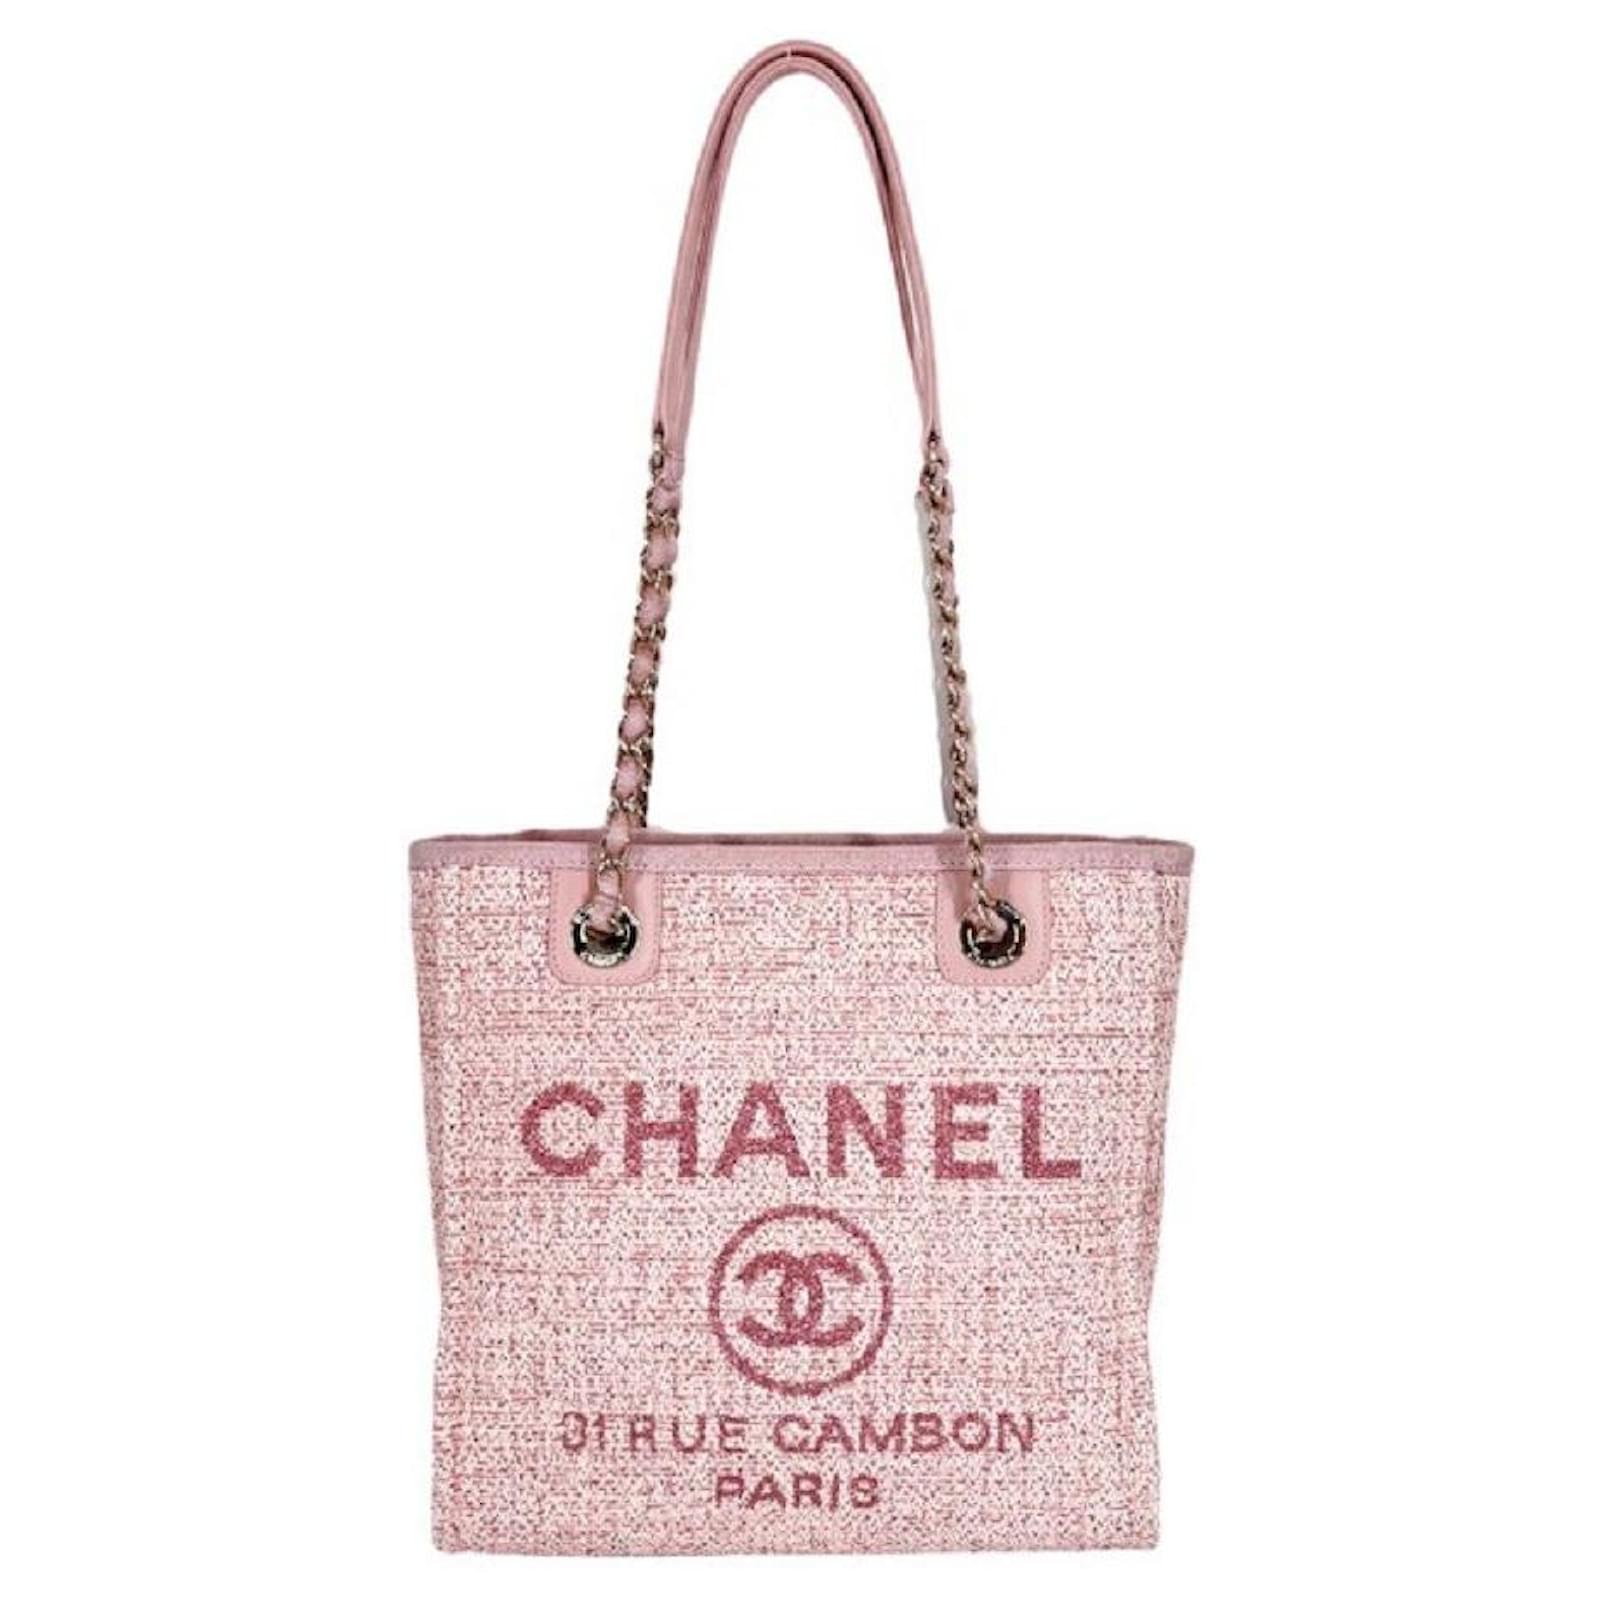 Chanel handbag ladies Deauville PM chain tote bag Cocomark 31 RUE